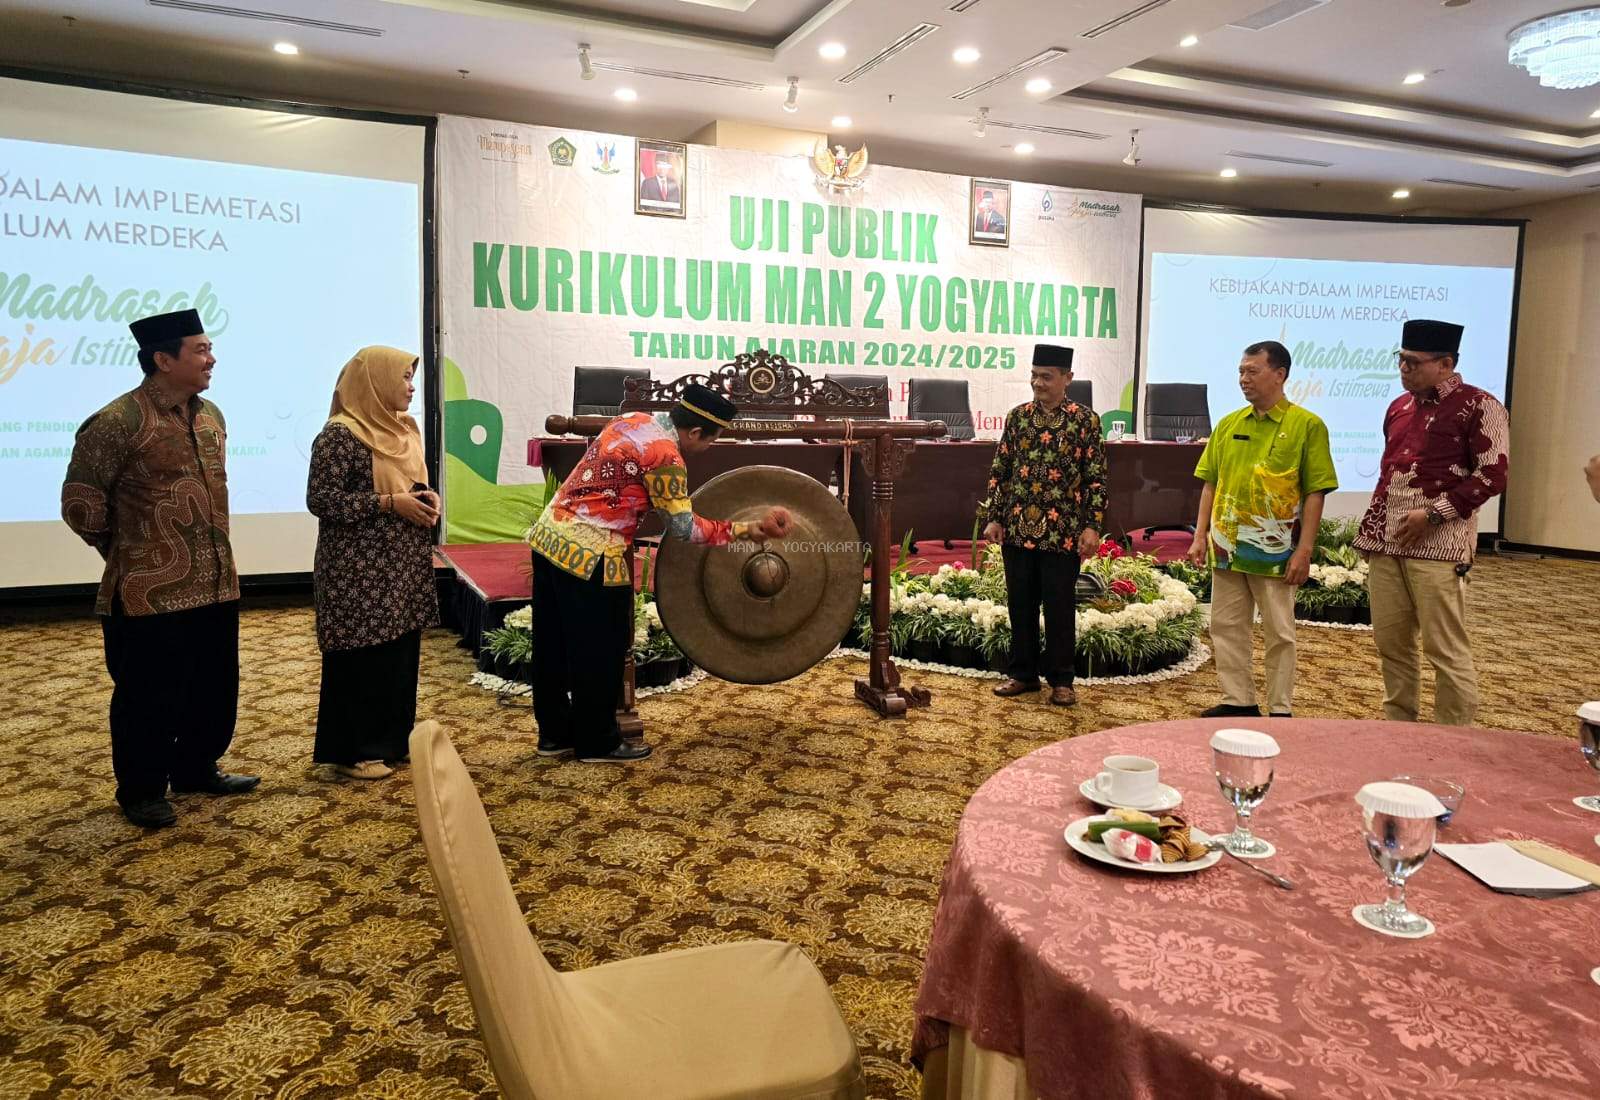 Kepala Bidang Kanwil Kemenag DIY Membuka Uji Publik Kurikulum Pendidikan, MAN 2 Yogyakarta